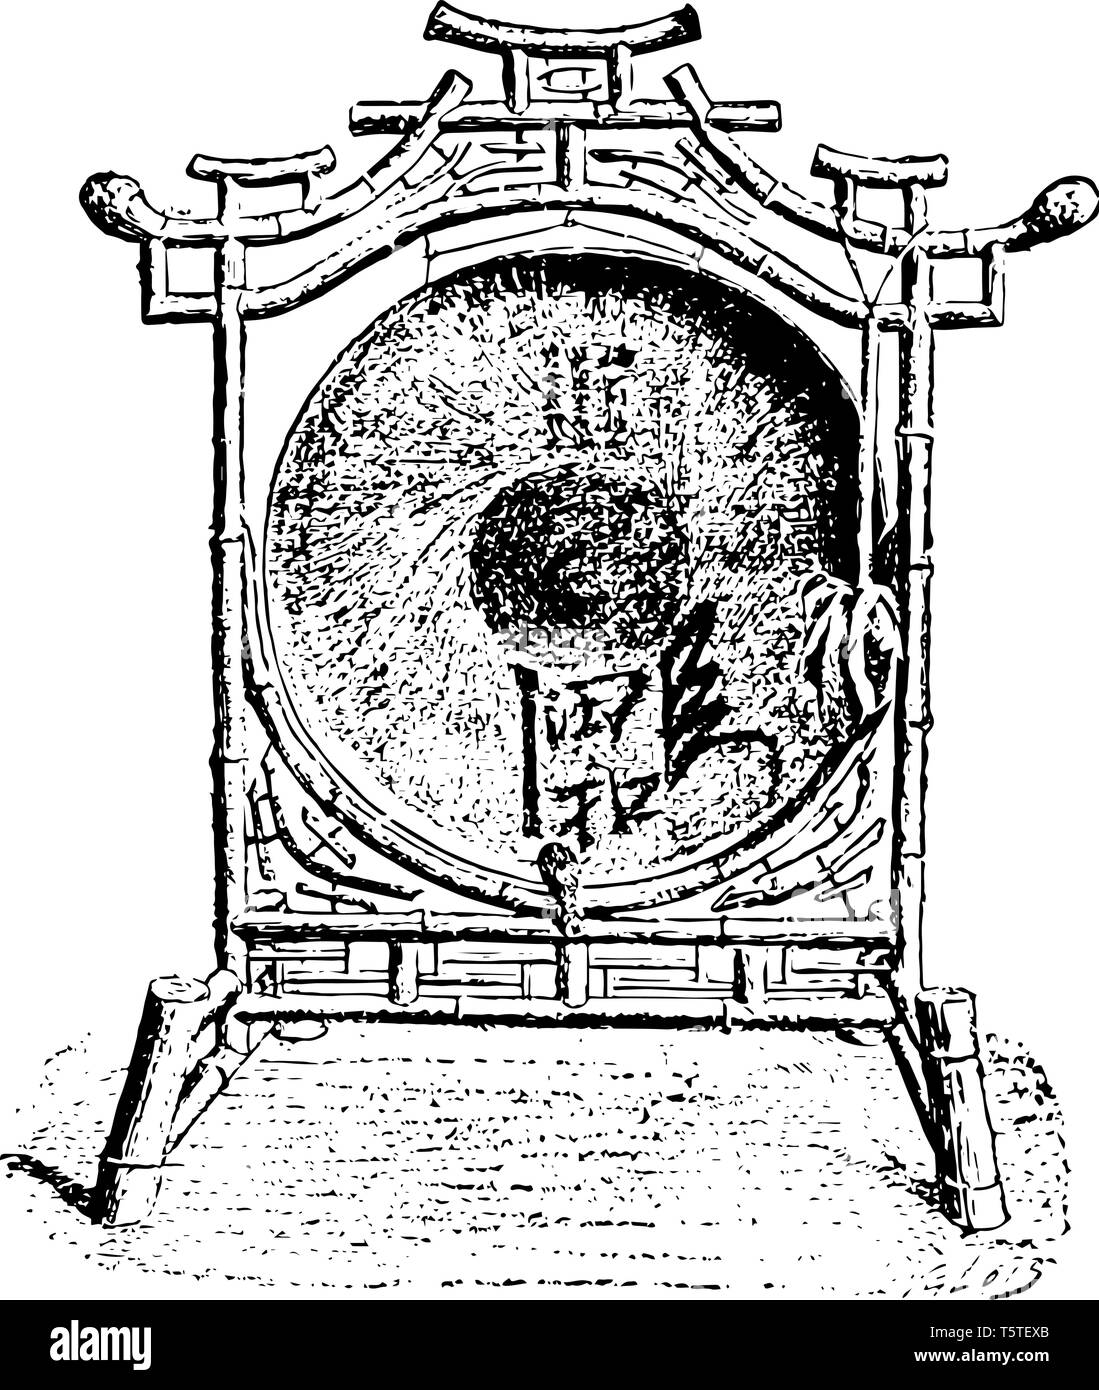 Chinesischen Gong ist mit einem Gummihammer mit Filz oder Lumpen bedeckt Struck, vintage Strichzeichnung oder Gravur Abbildung. Stock Vektor